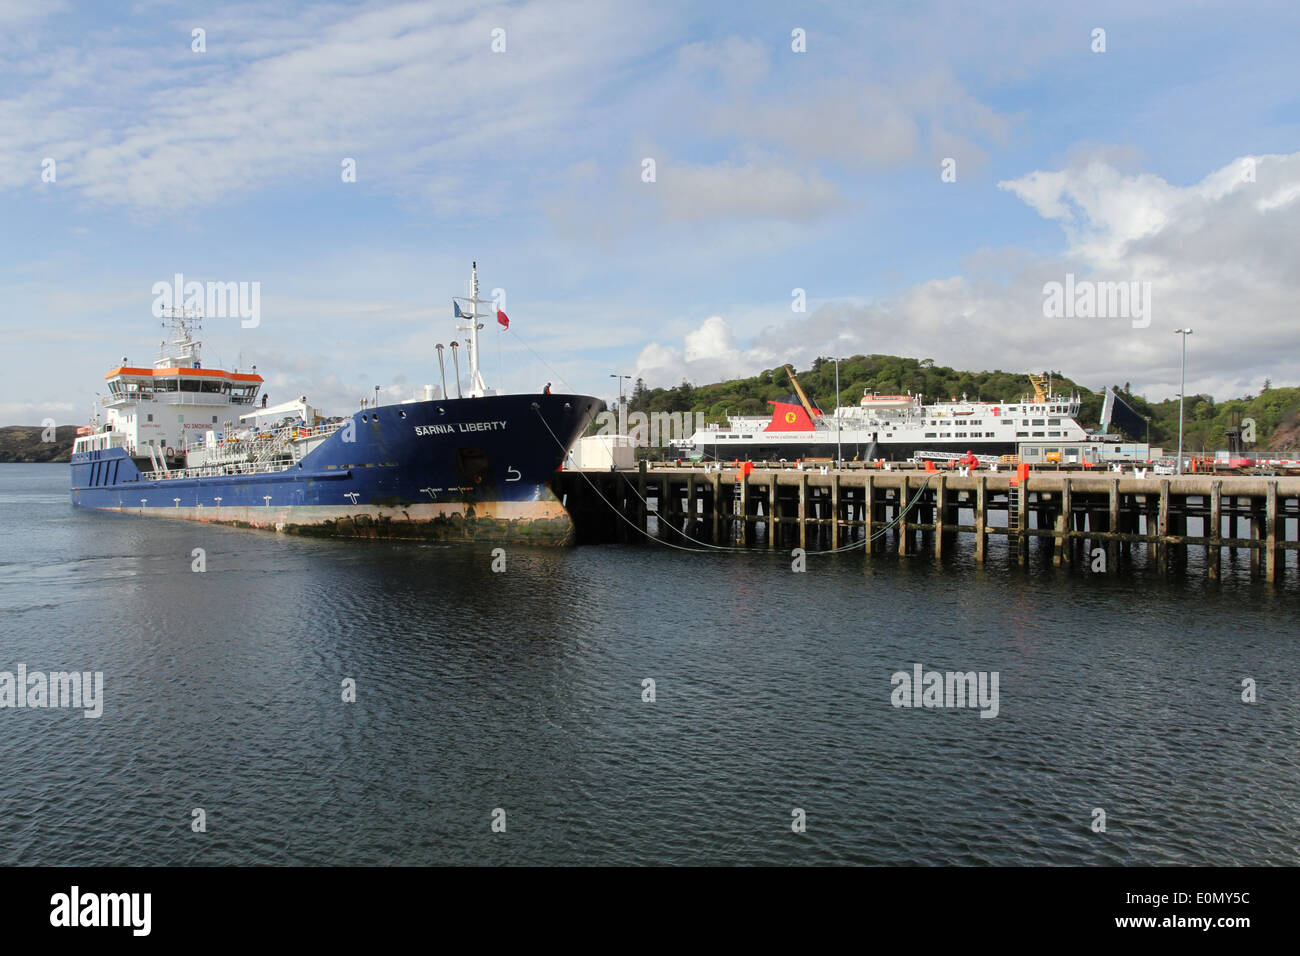 MV Sarnia Liberty and MV Isle of Lewis docked Stornoway Isle of Lewis Scotland  May 2014 Stock Photo